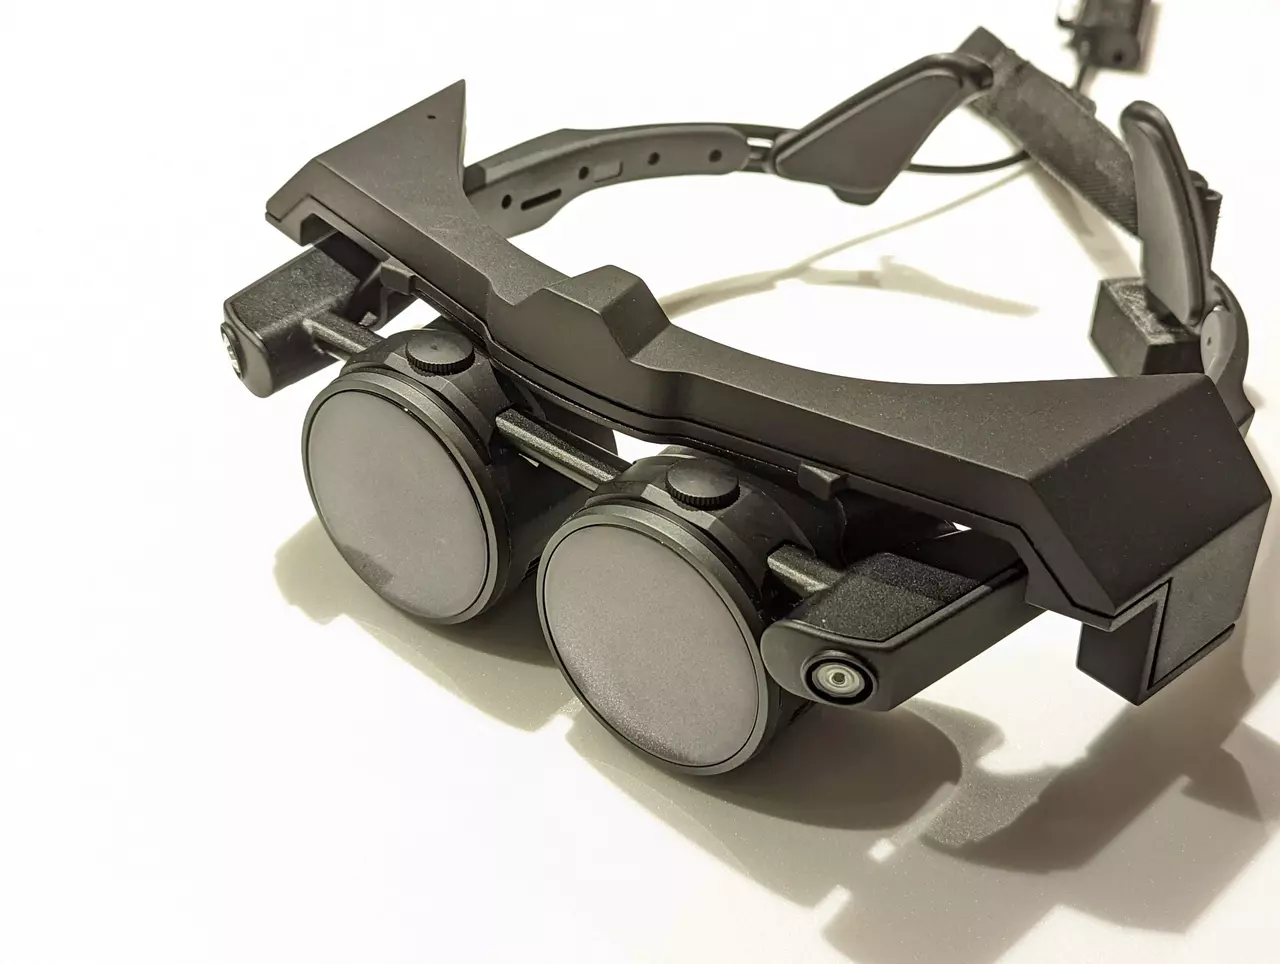 Тонкую и легкую гарнитуру MeganeX PC VR выпустила компания Shiftall, дочернее предприятие Panasonic